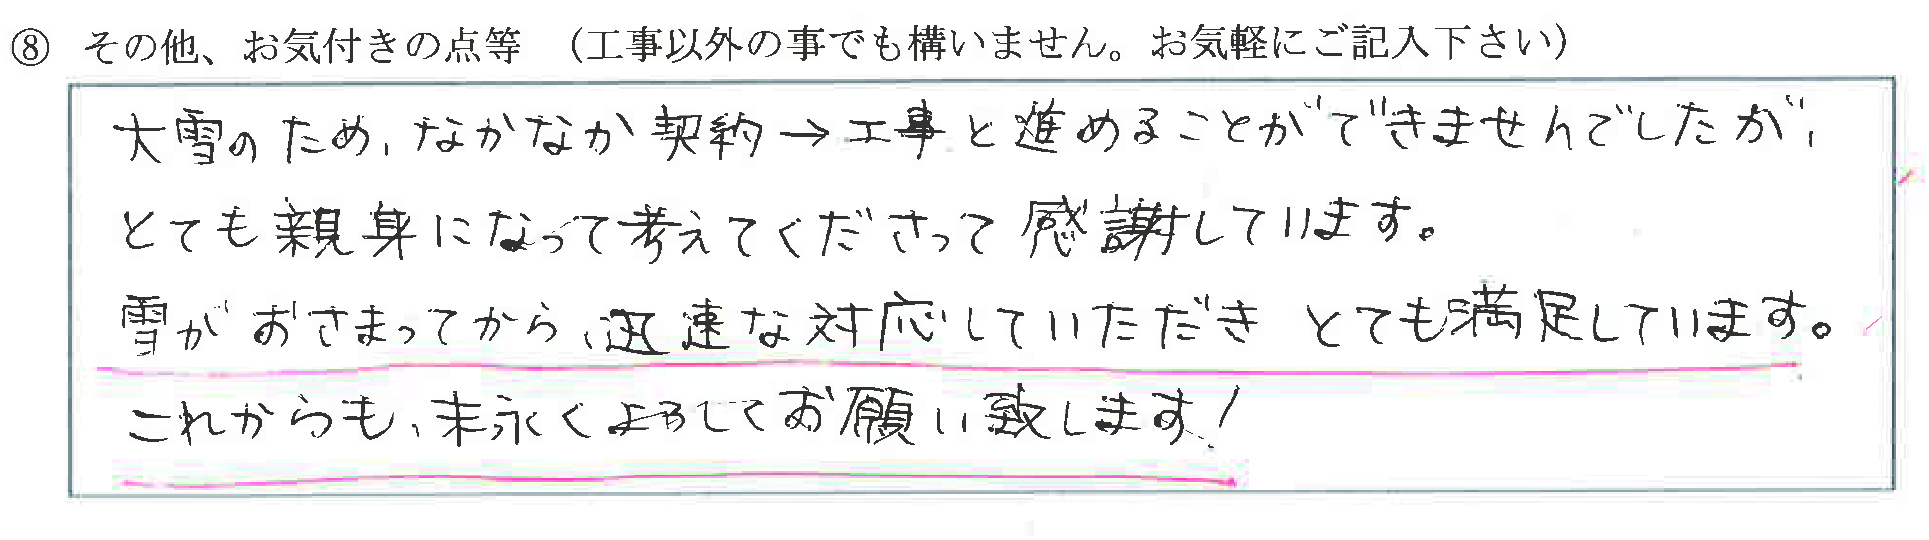 富山県黒部市M様に頂いたキッチンカラン交換についてのお気づきの点がありましたら、お聞かせ下さい。というご質問について「キッチンカラン交換【  お喜びの声  】」というお声についての画像